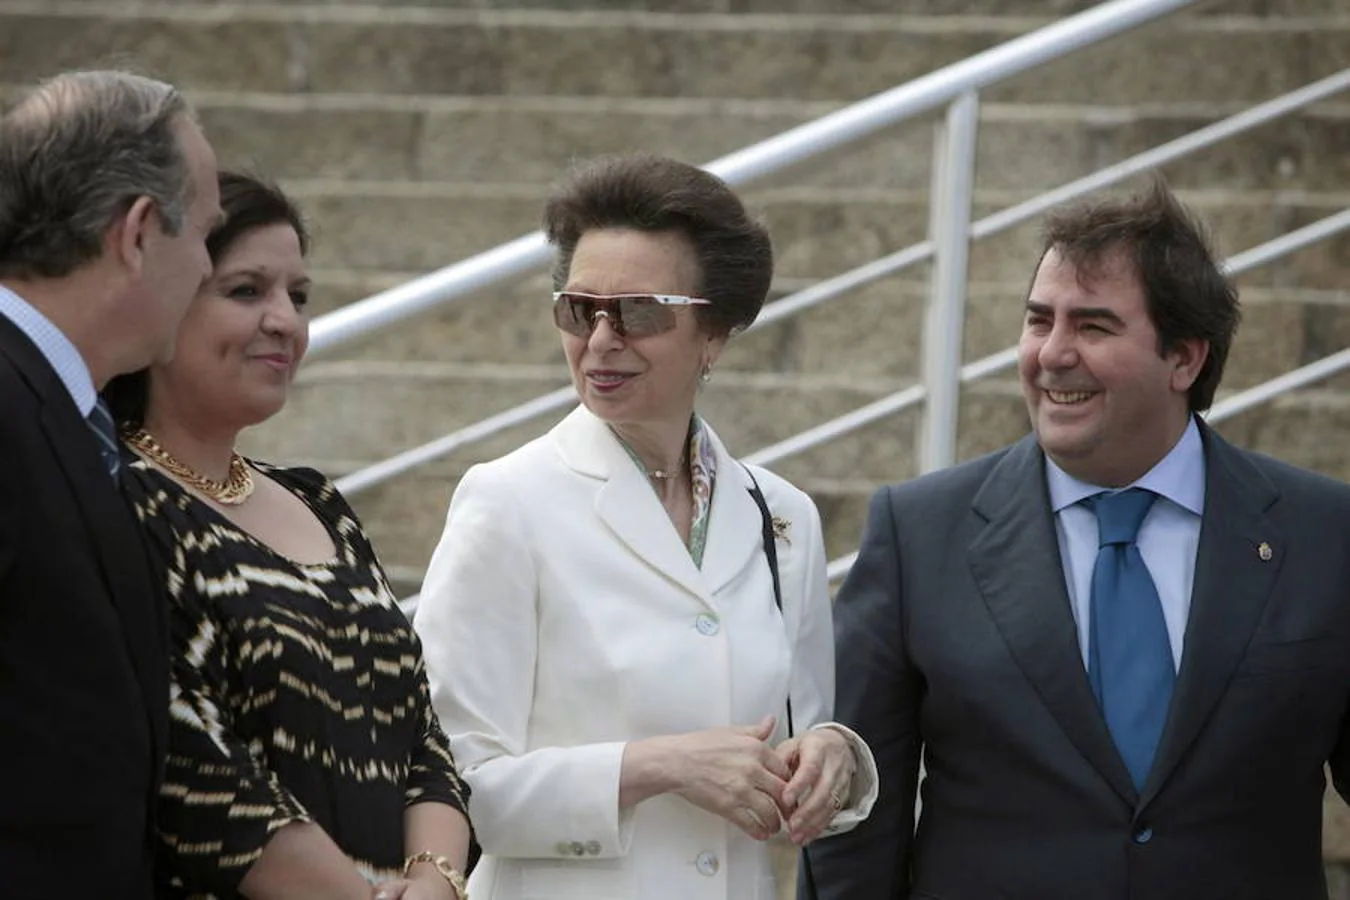 2014. La princesa Ana de Inglaterra visita la Torre de Hércules en La Coruña en compañía del entonces alcalde de la ciudad, Carlos Negreira (2011-2016) y su concejala, Luisa Cid